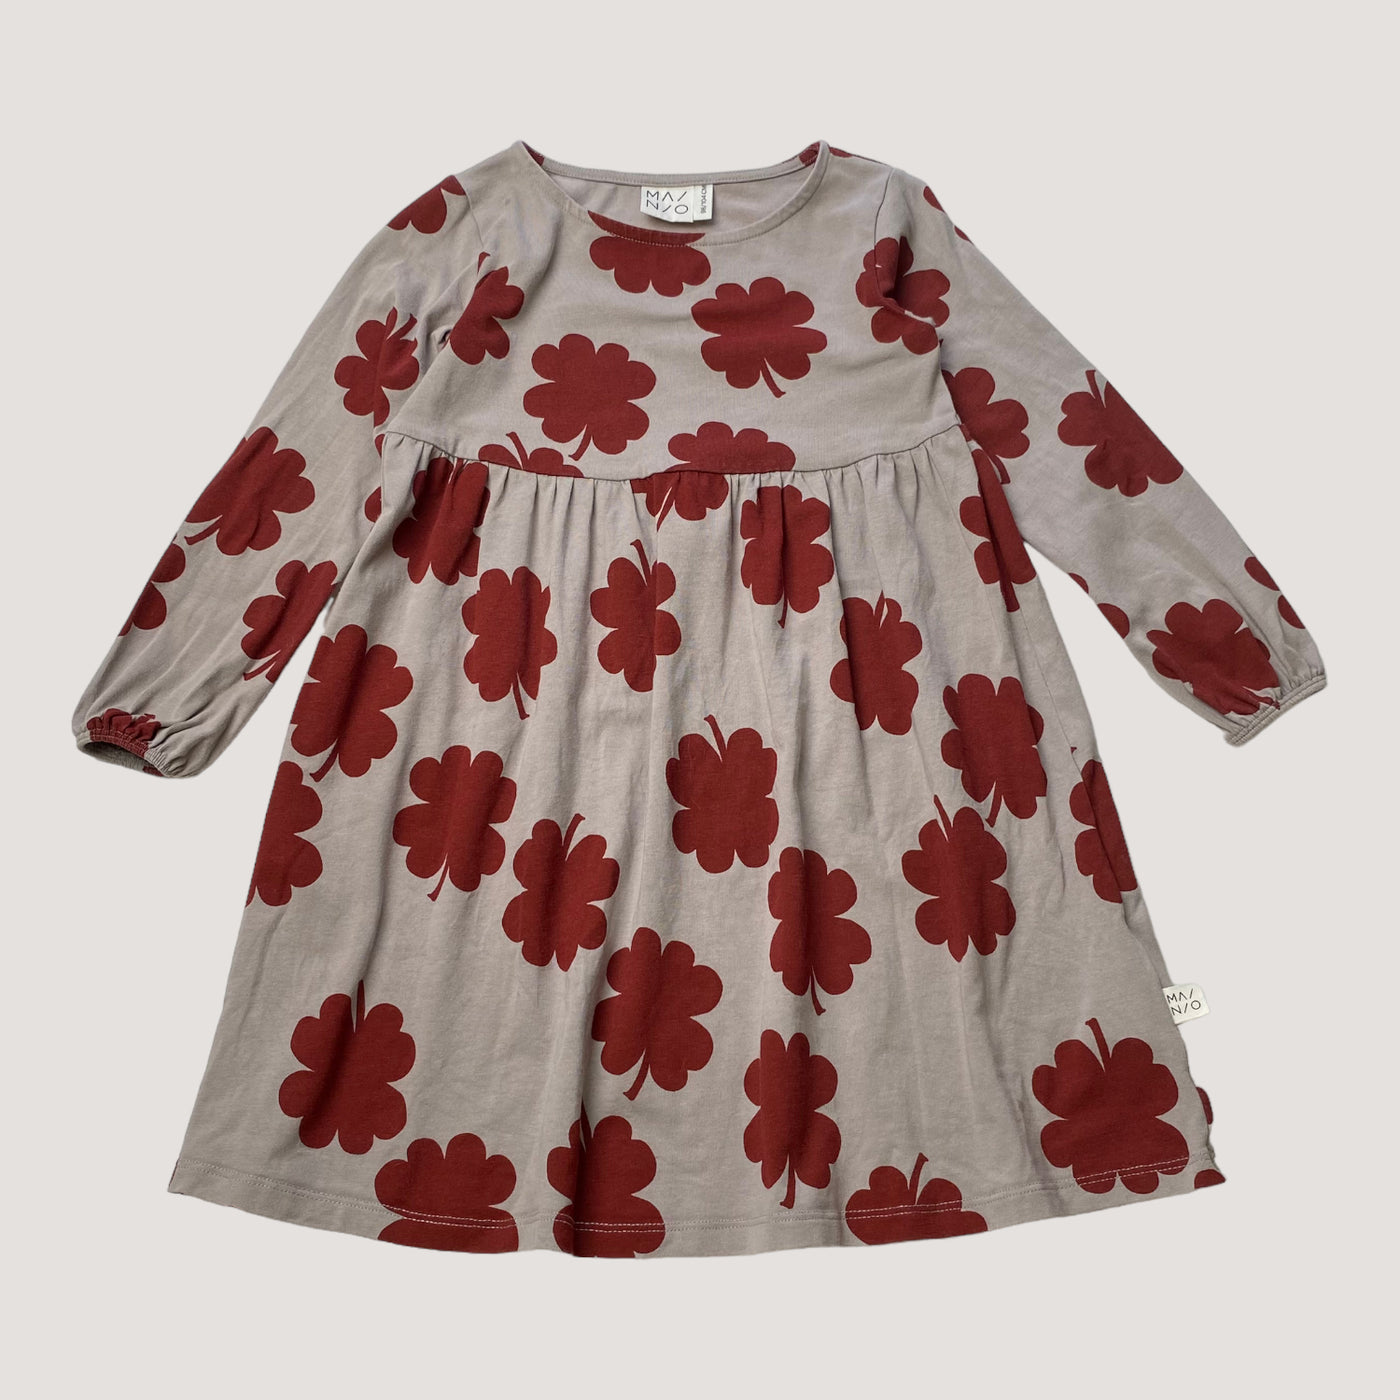 Mainio dress, flower| 98/104cm